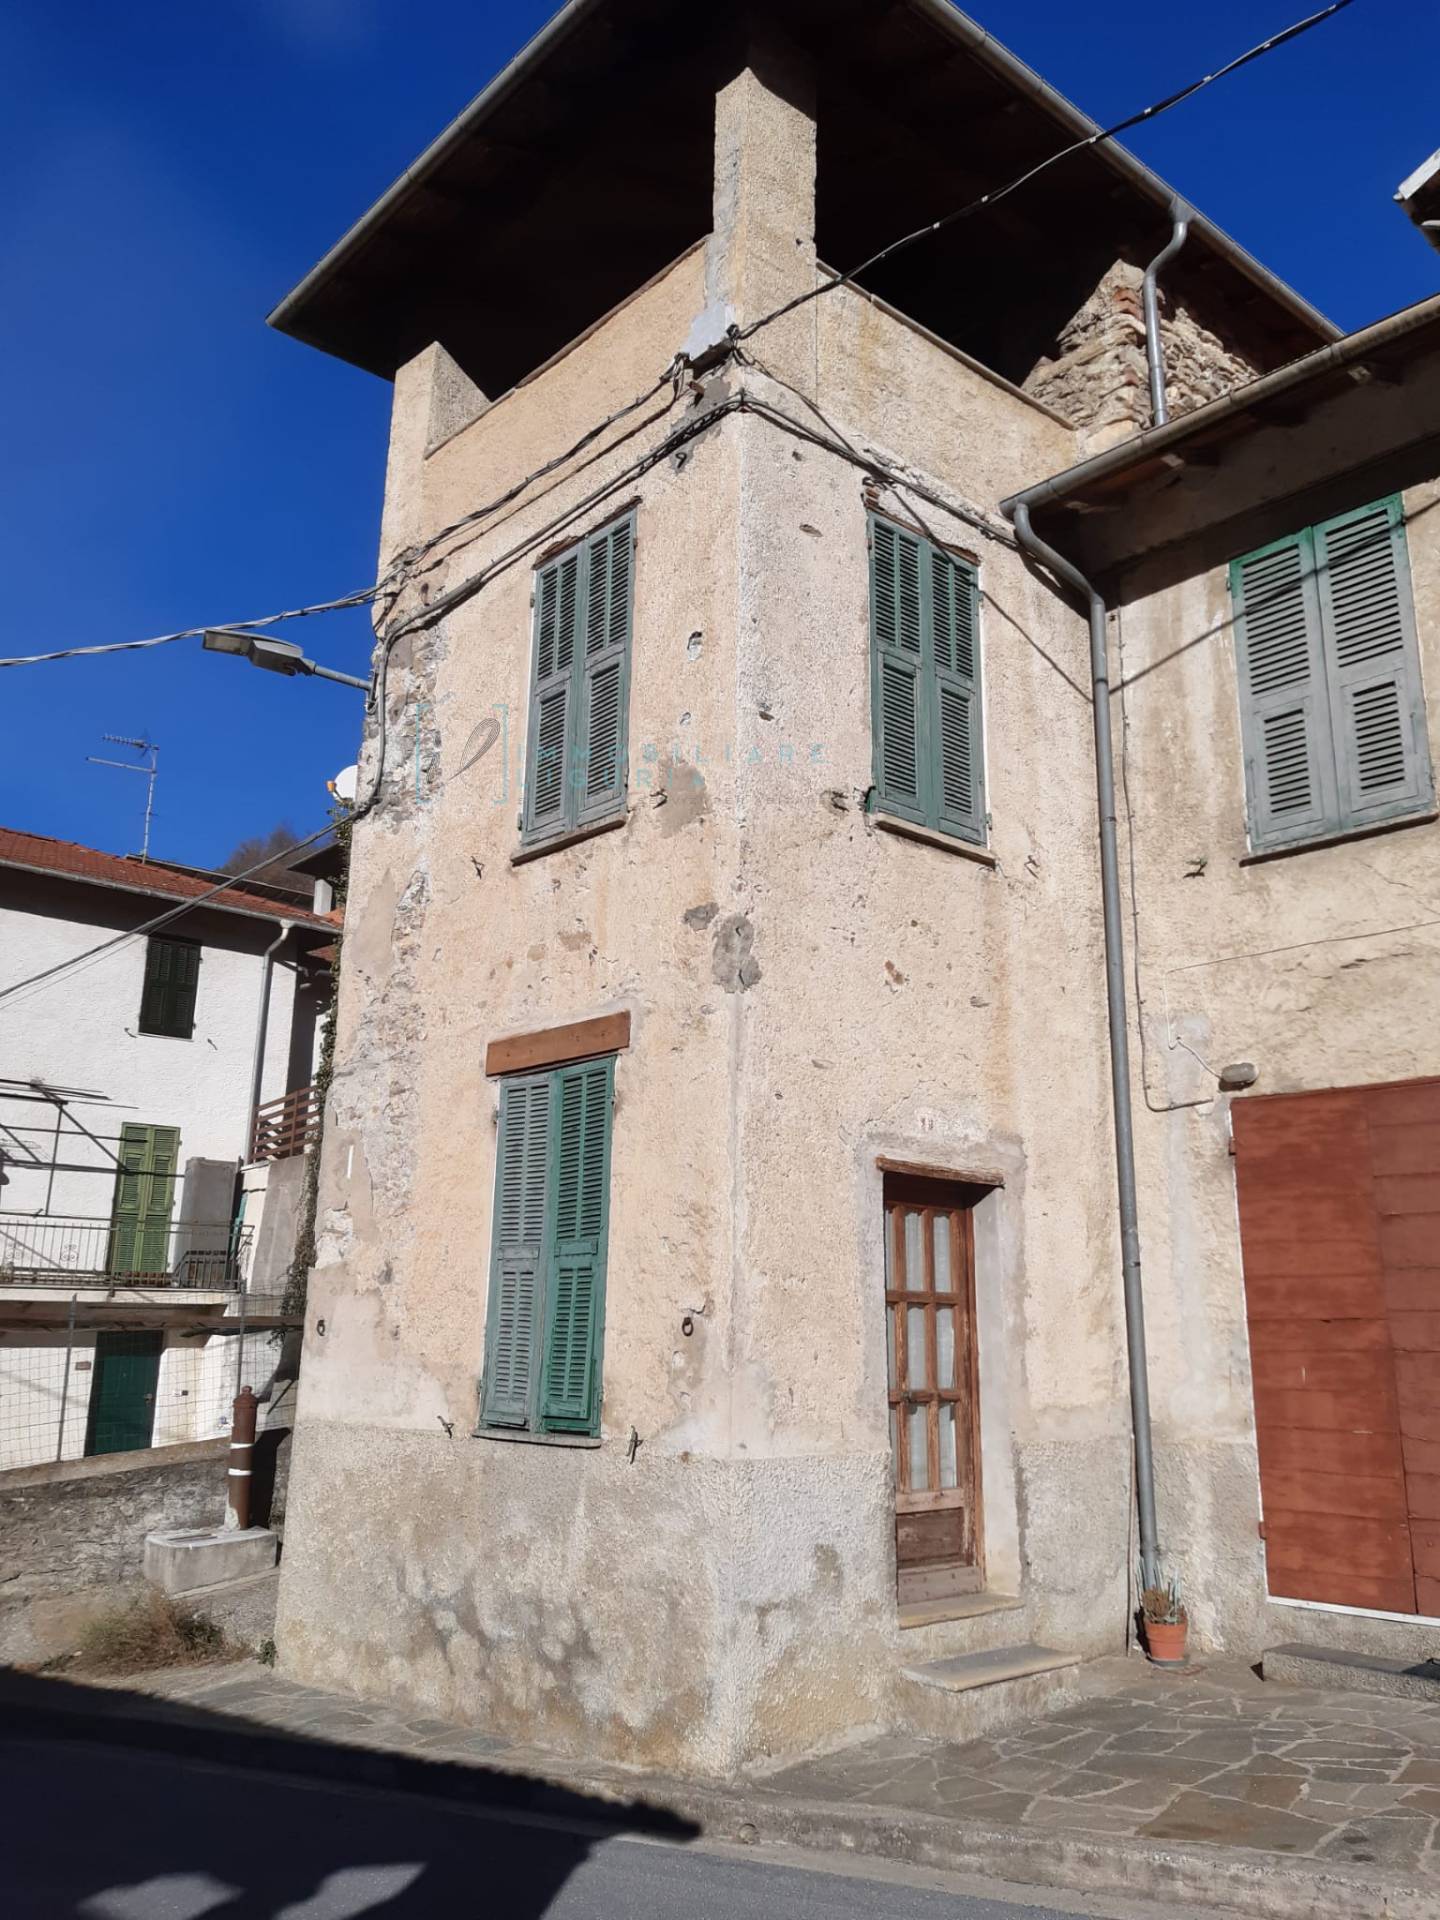 Rustico / Casale in vendita a Pieve di Teco, 8 locali, zona etico, prezzo € 72.000 | PortaleAgenzieImmobiliari.it